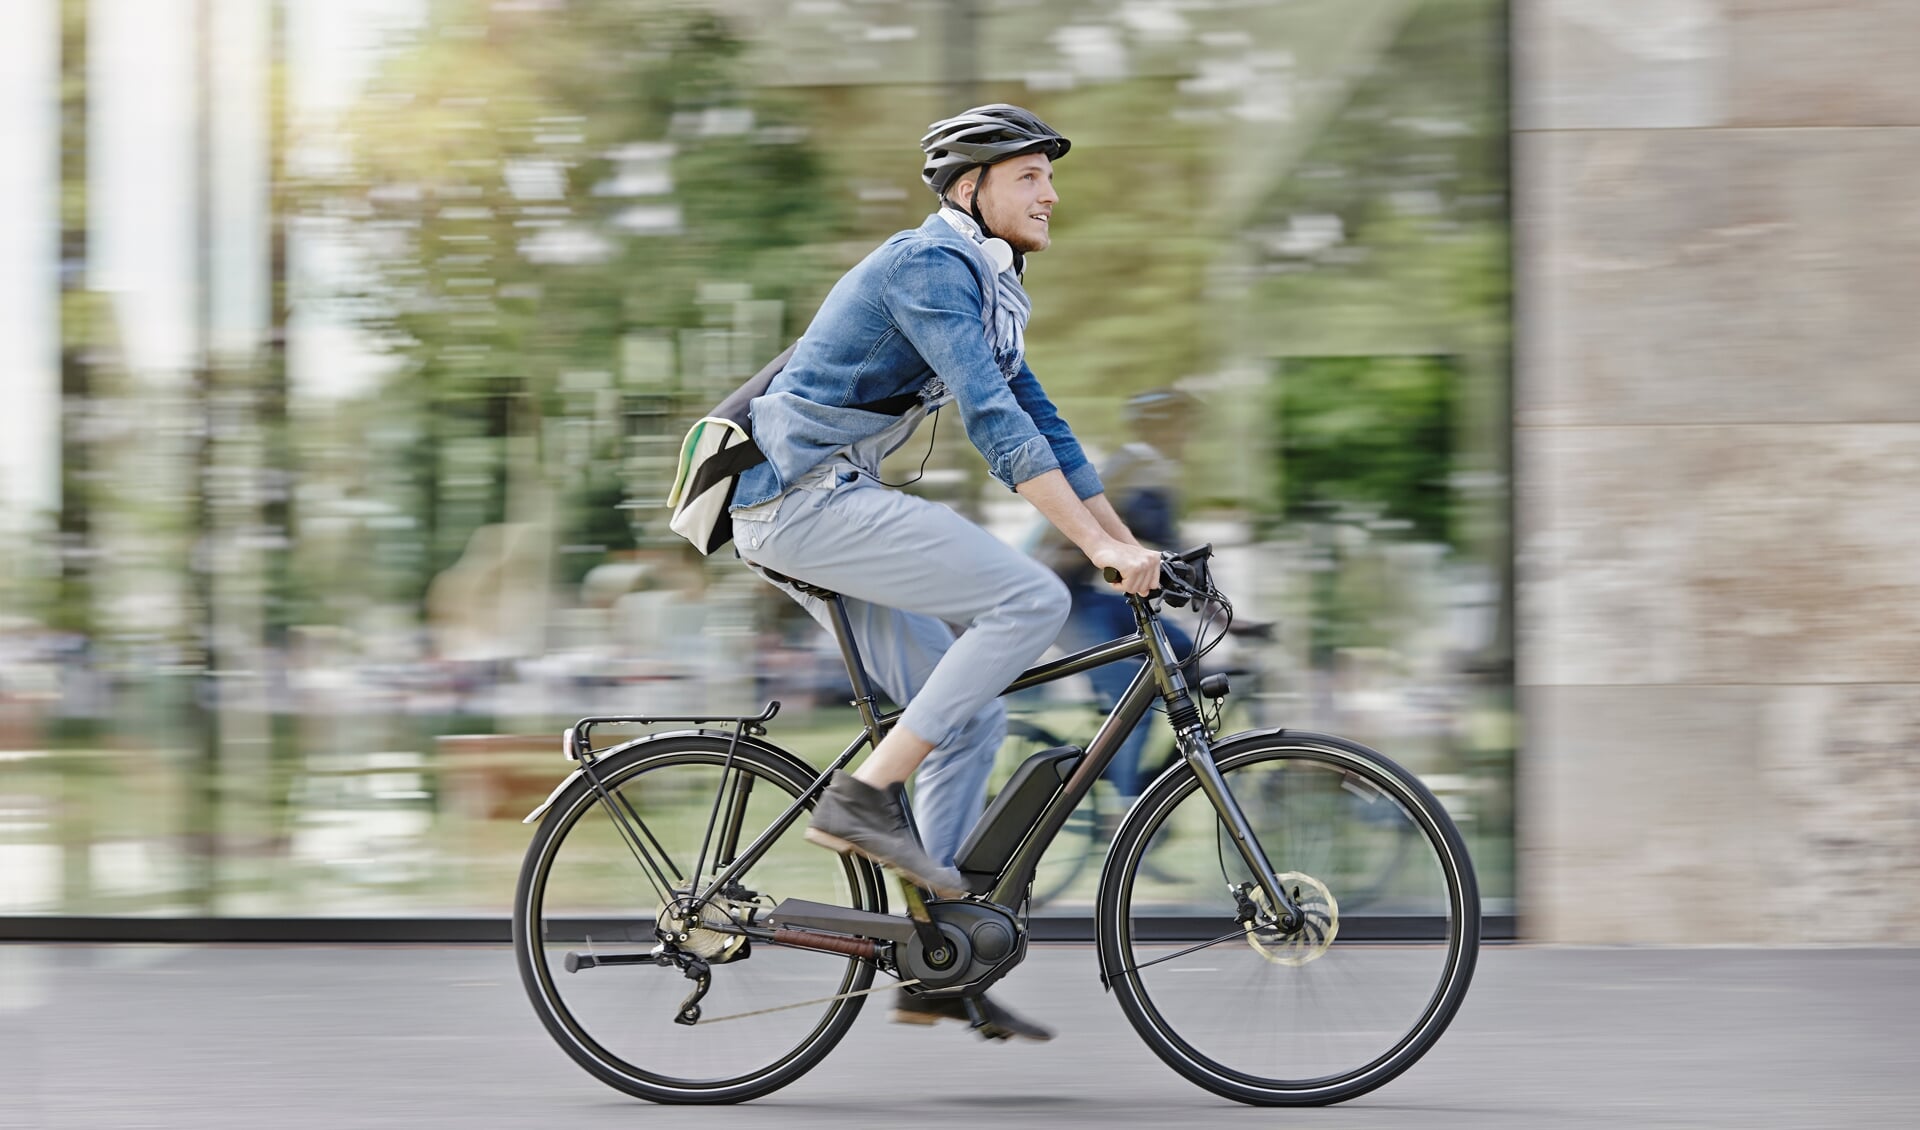 Steeds meer jongeren ontdekken de e-bike. Zij zijn ook vaak slachtoffer van diefstal van deze fietsen.